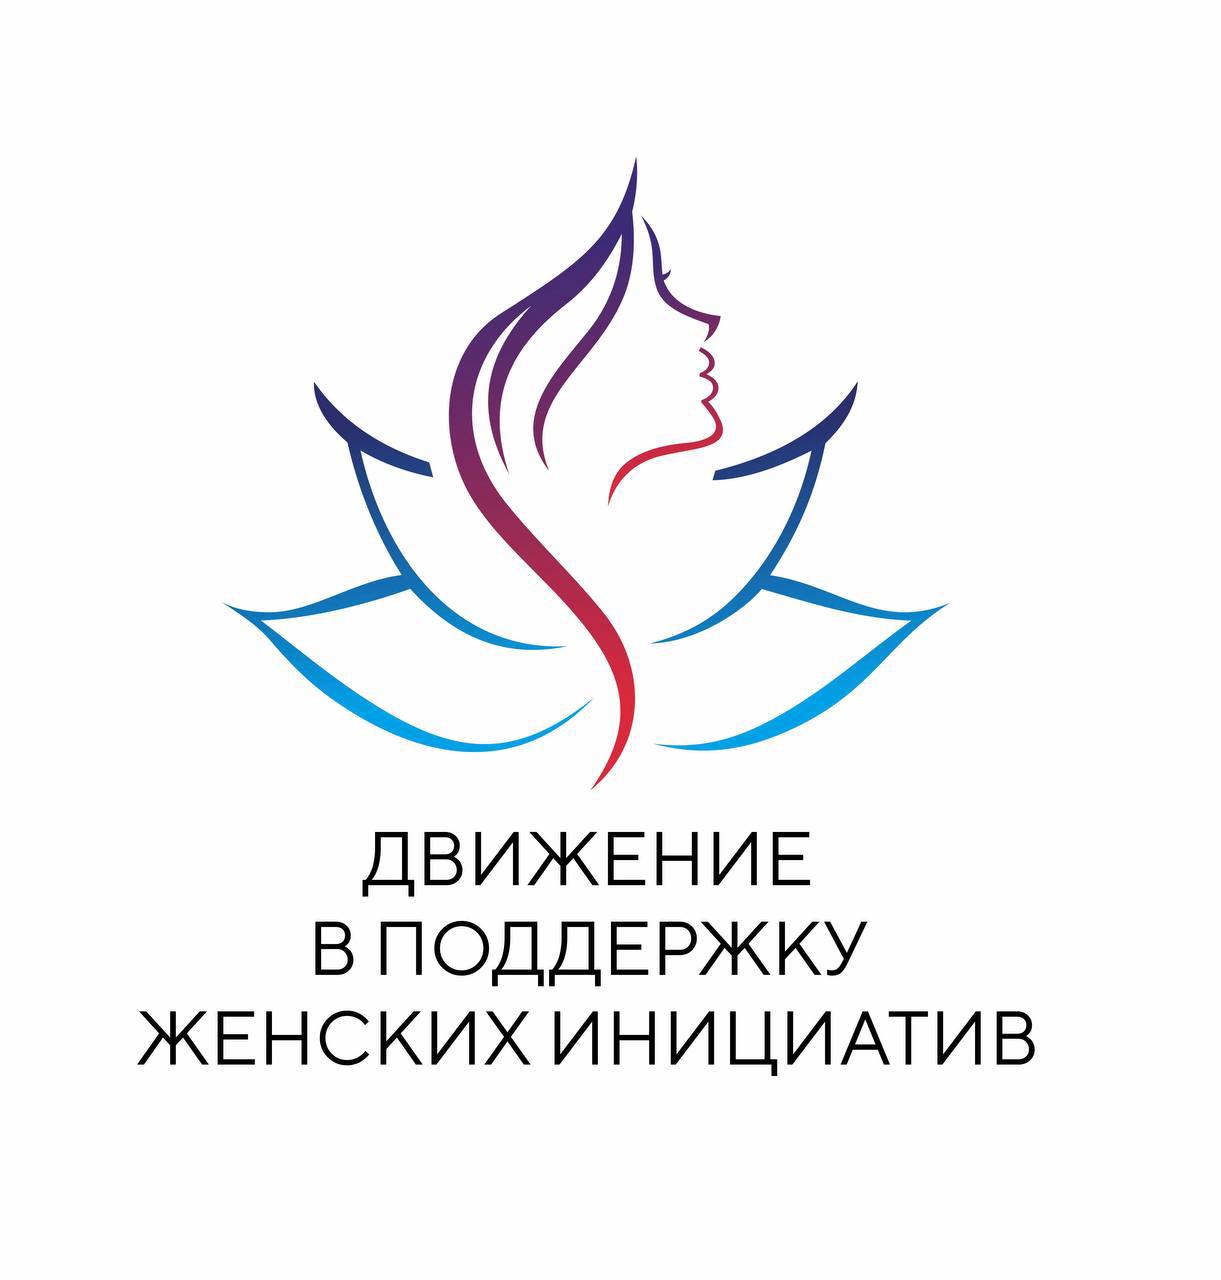 В Астрахани появилась новая некоммерческая организация в поддержку женских инициатив